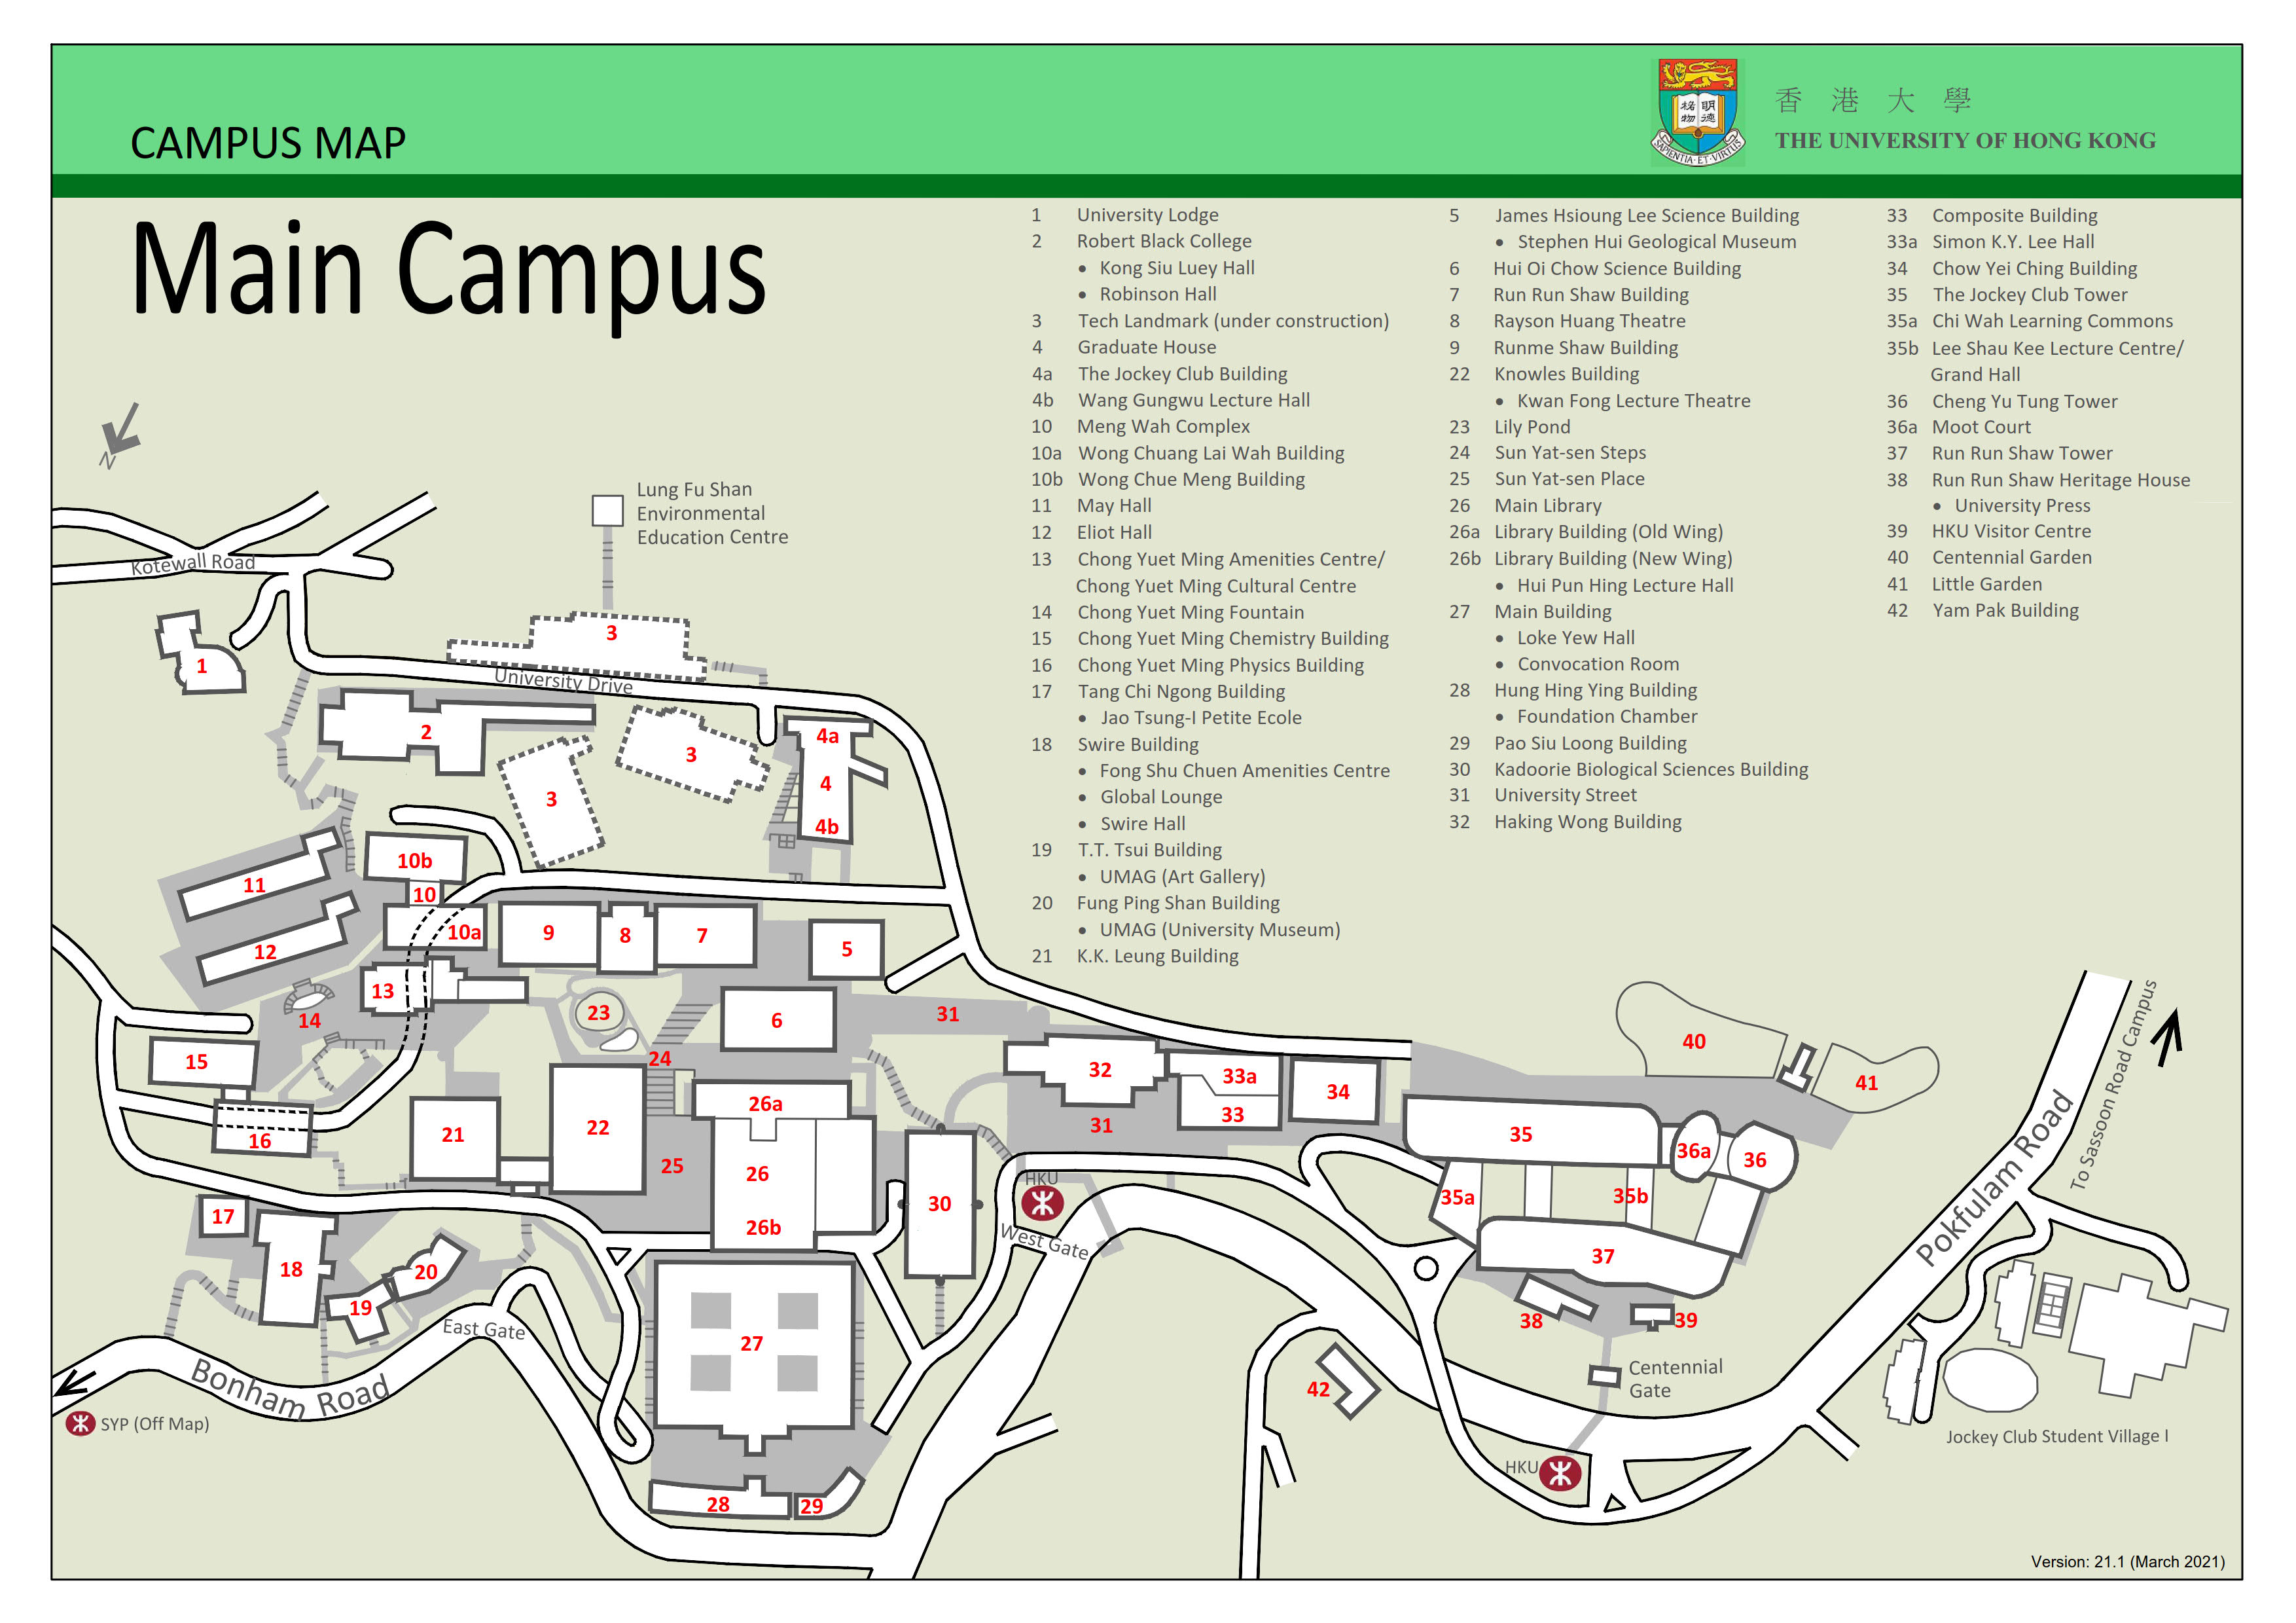 Campus Map - Main Campus